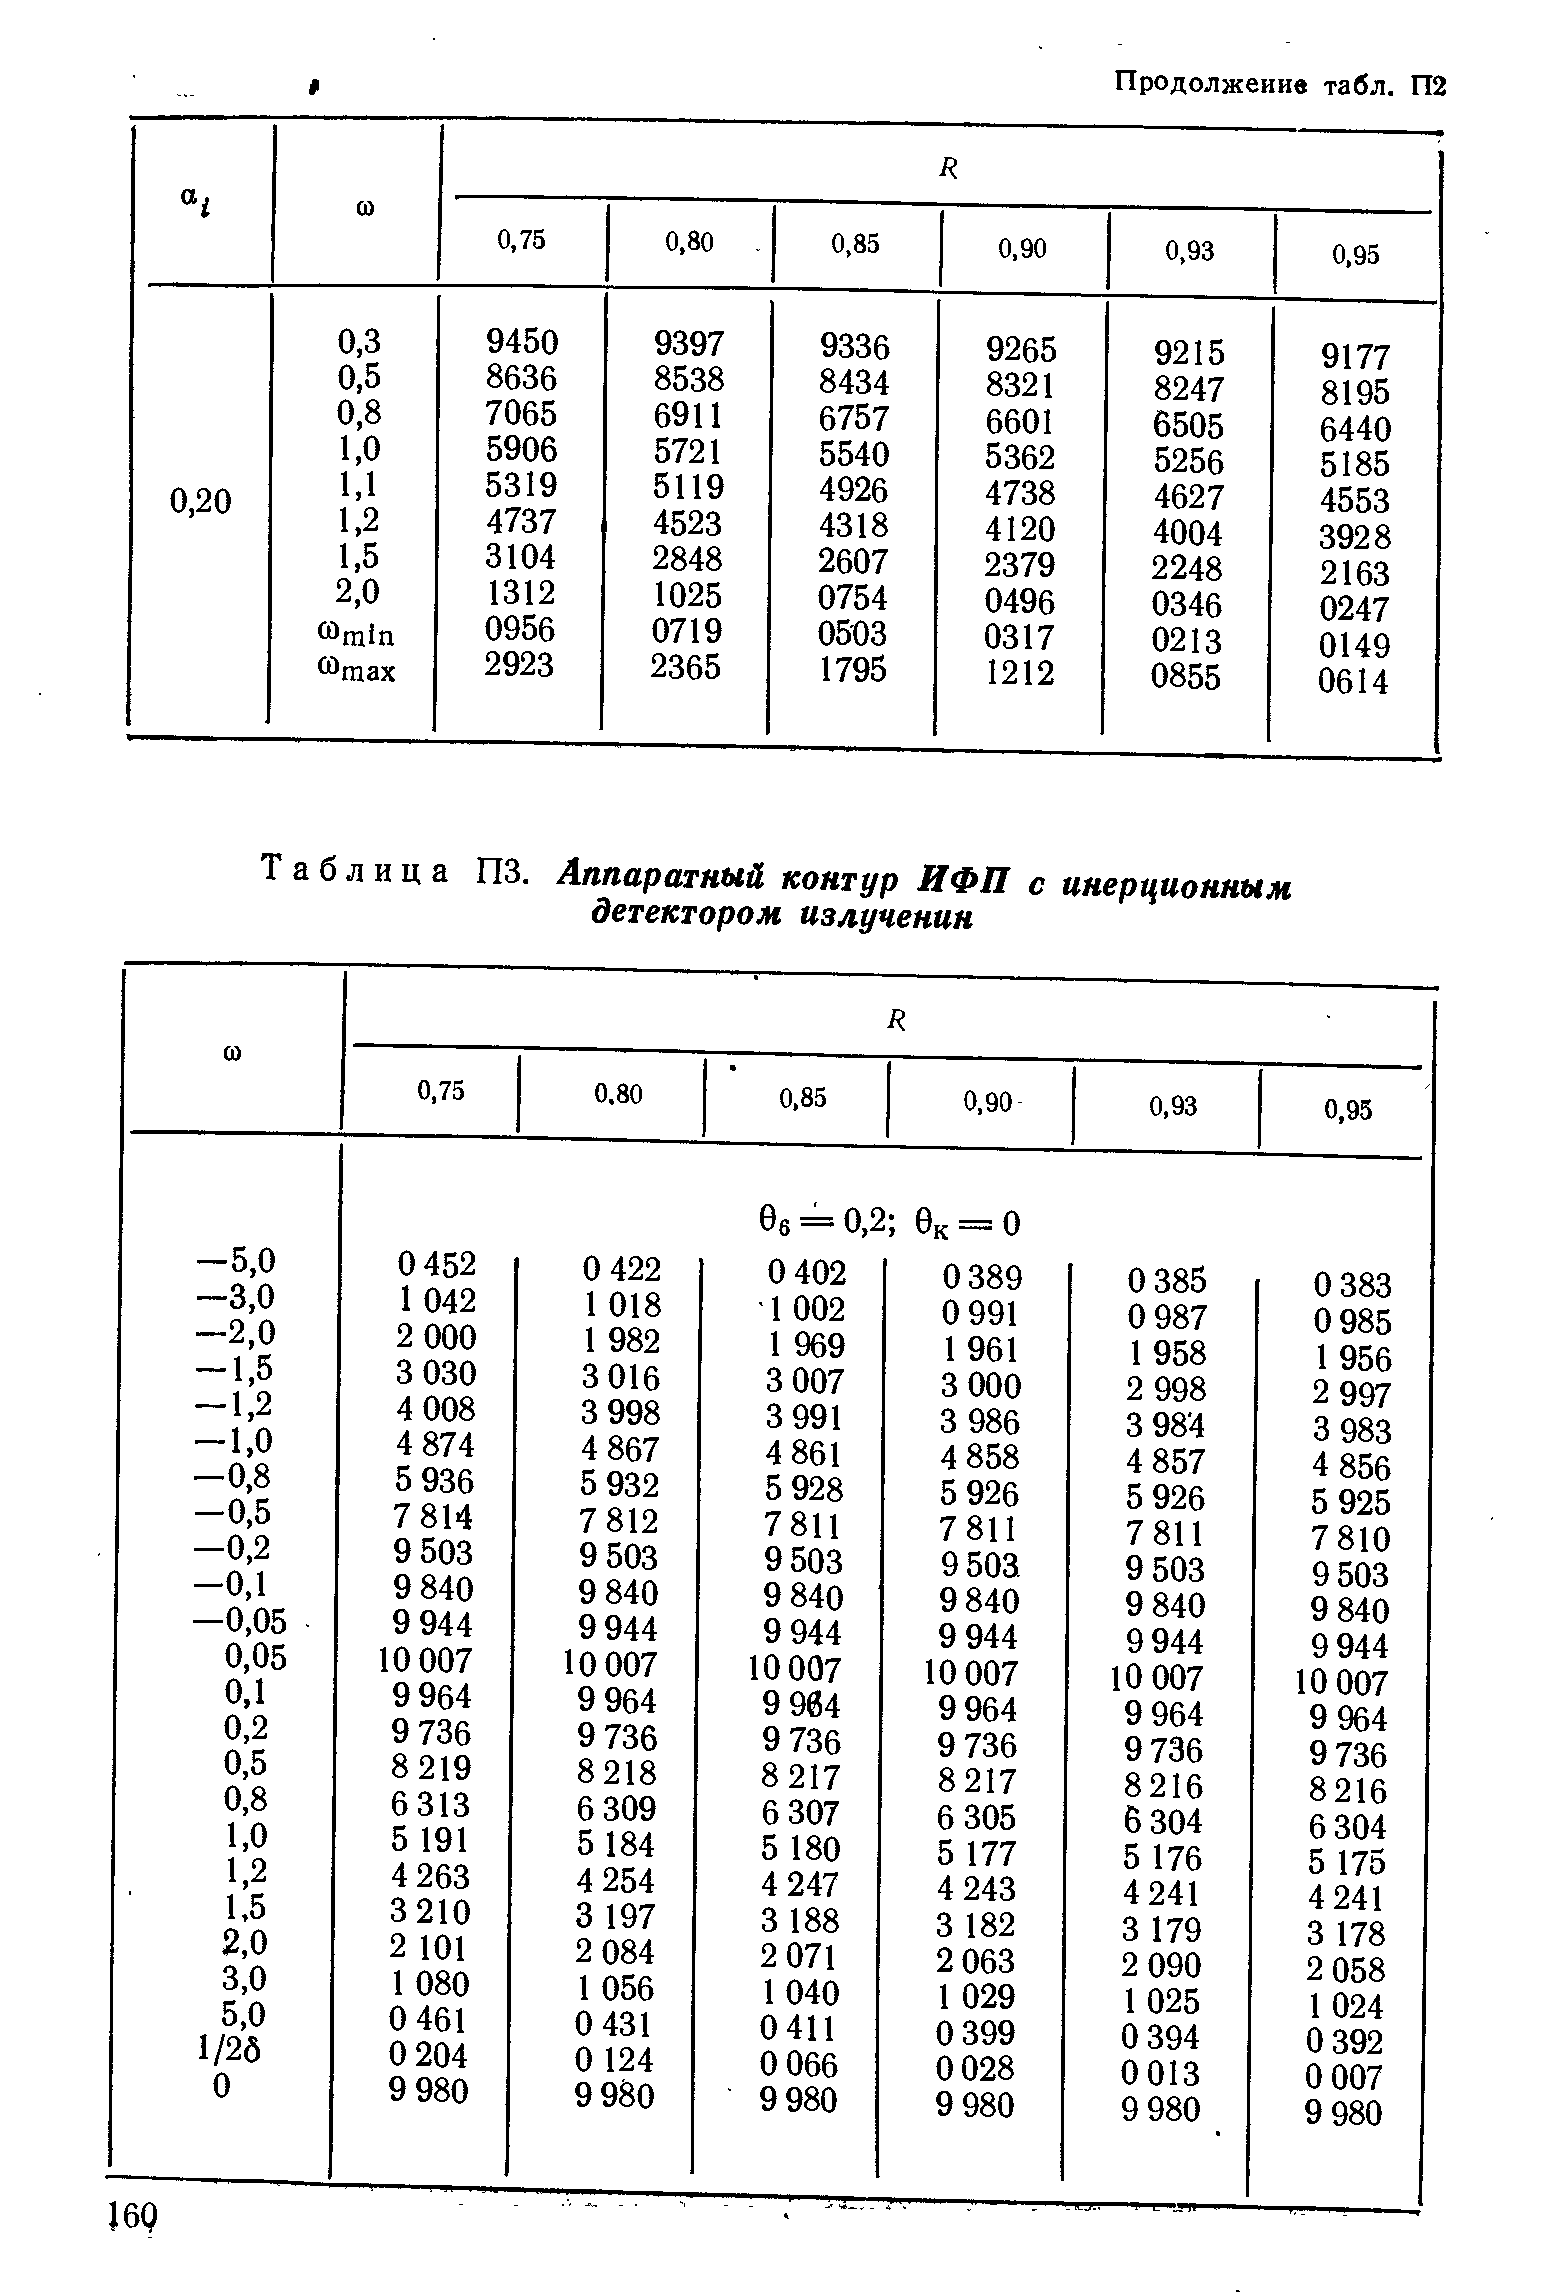 Таблица ПЗ. Аппаратный контур ИФП с инерционным детектором излучении
